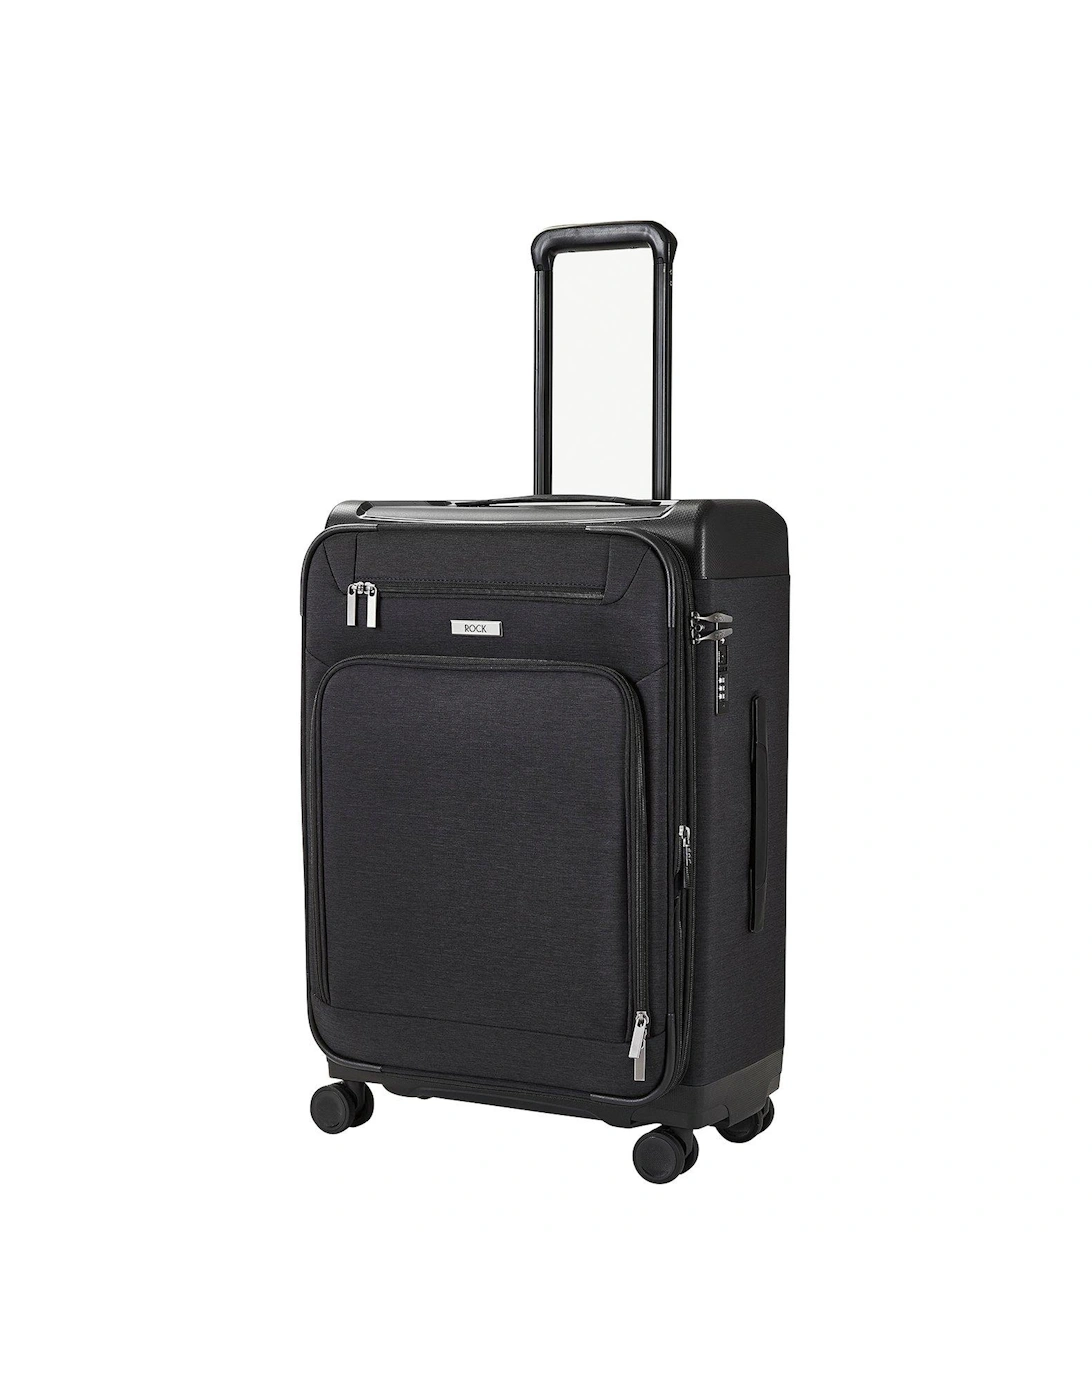 Parker 8-Wheel Suitcase Medium - Black, 2 of 1